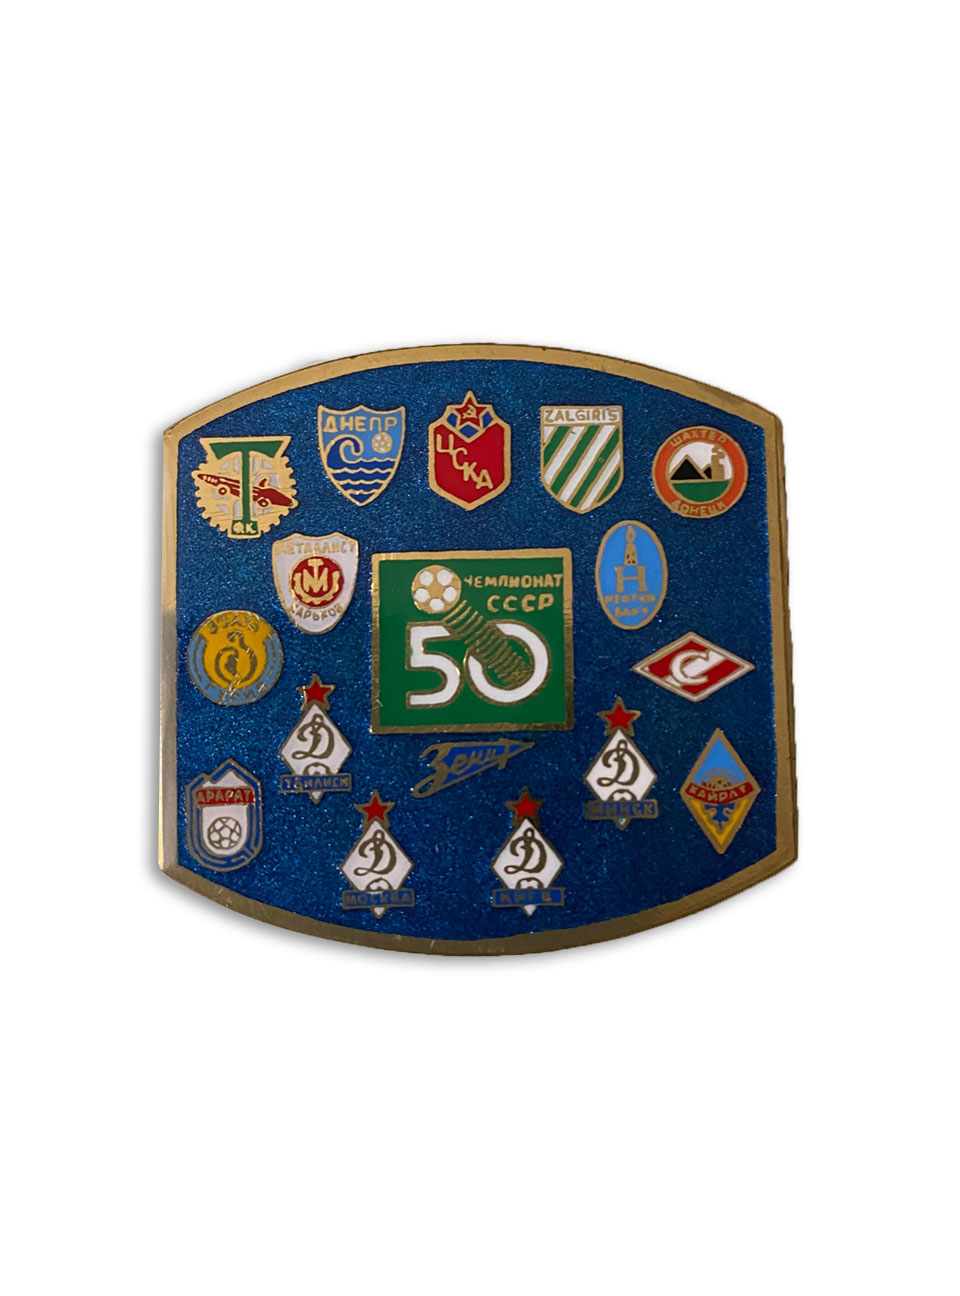 Коллекционный значок 50-й Чемпионат СССР, цвет синий ПРОЧЕЕ